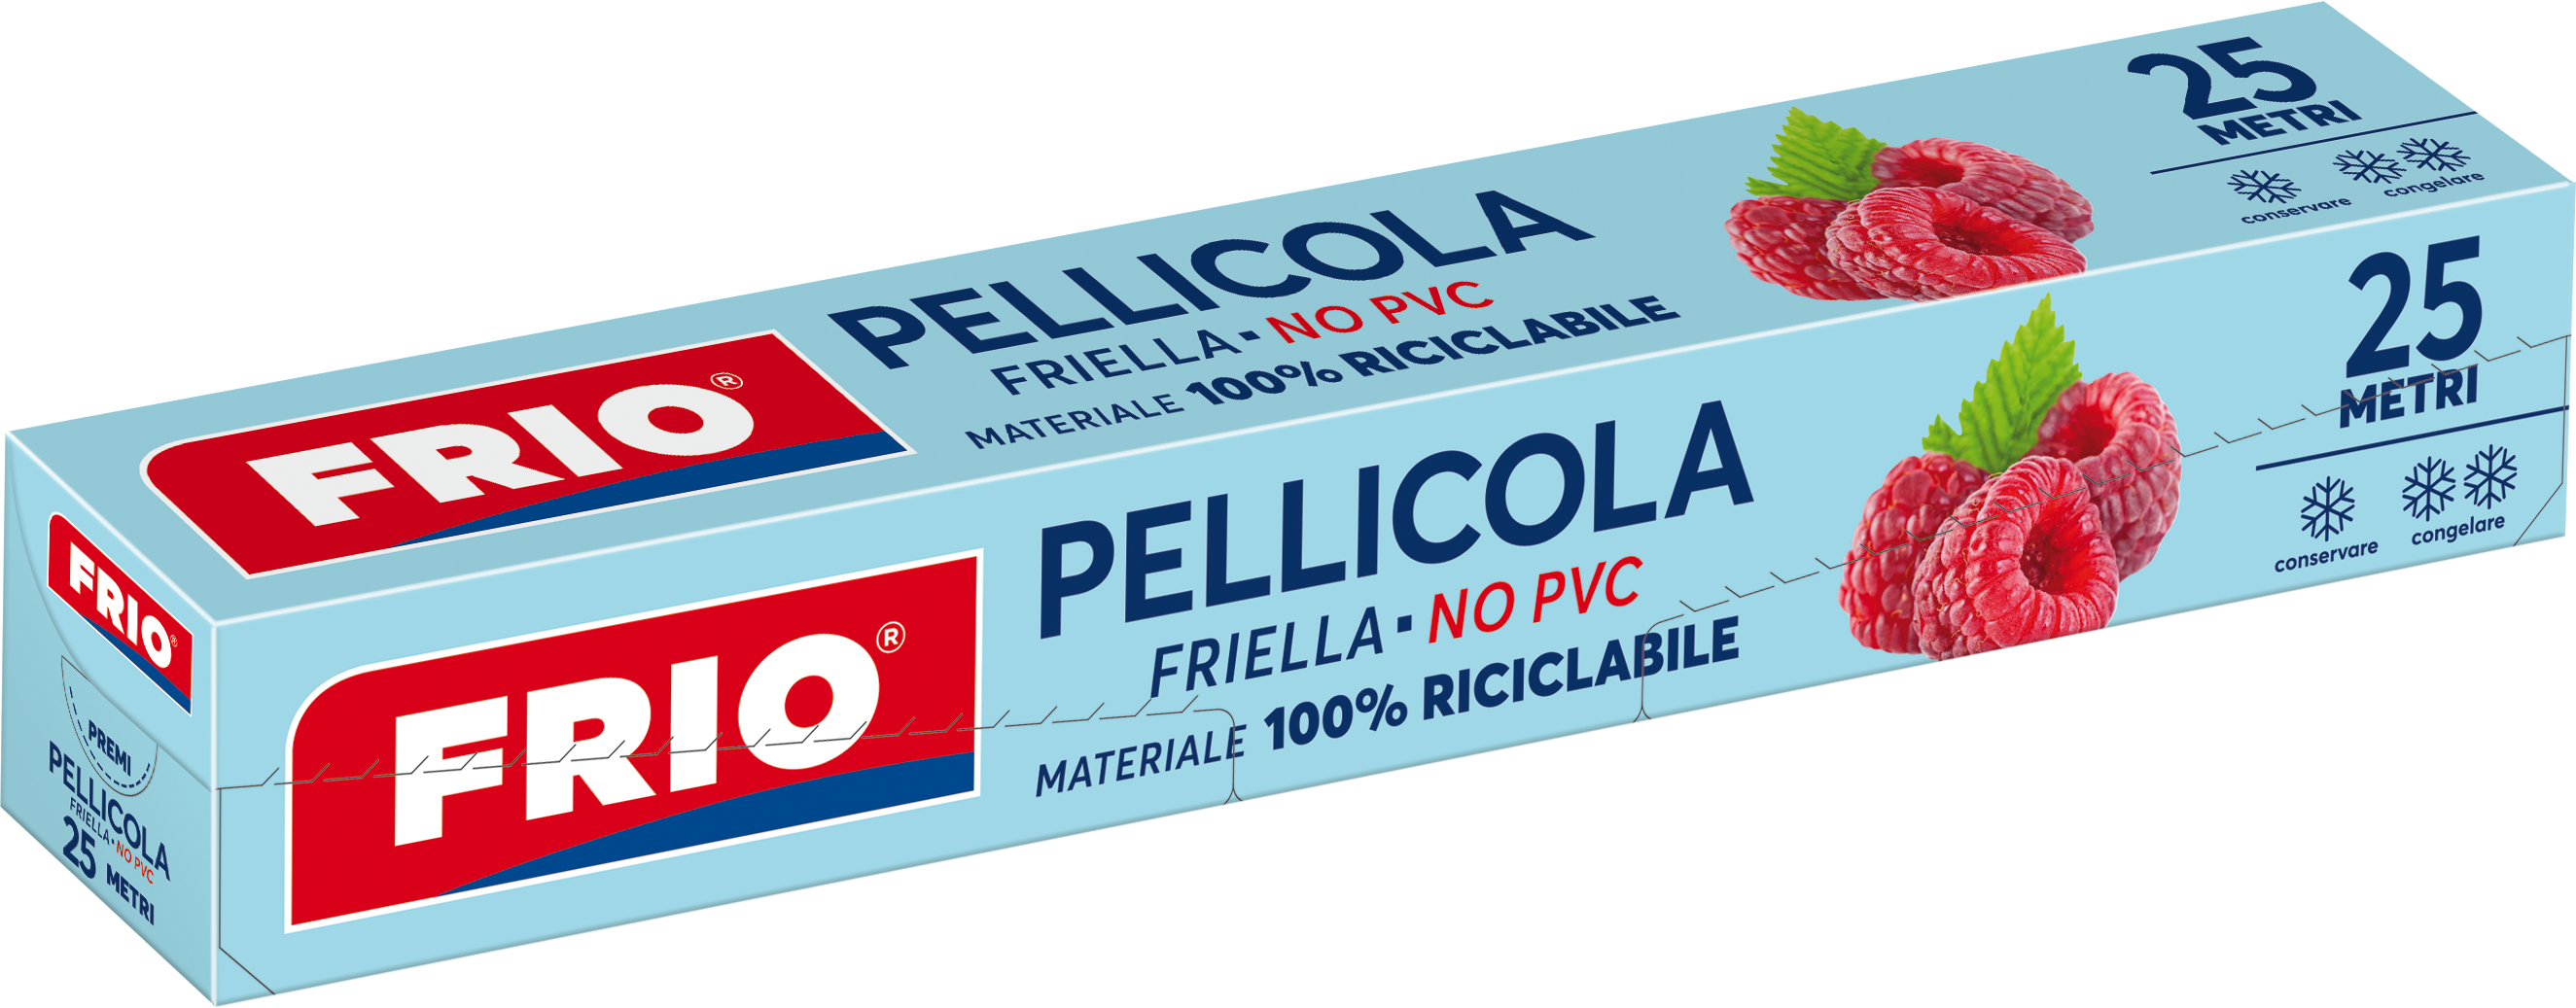 233 – Friella Pellicola NO PVC 25 mt